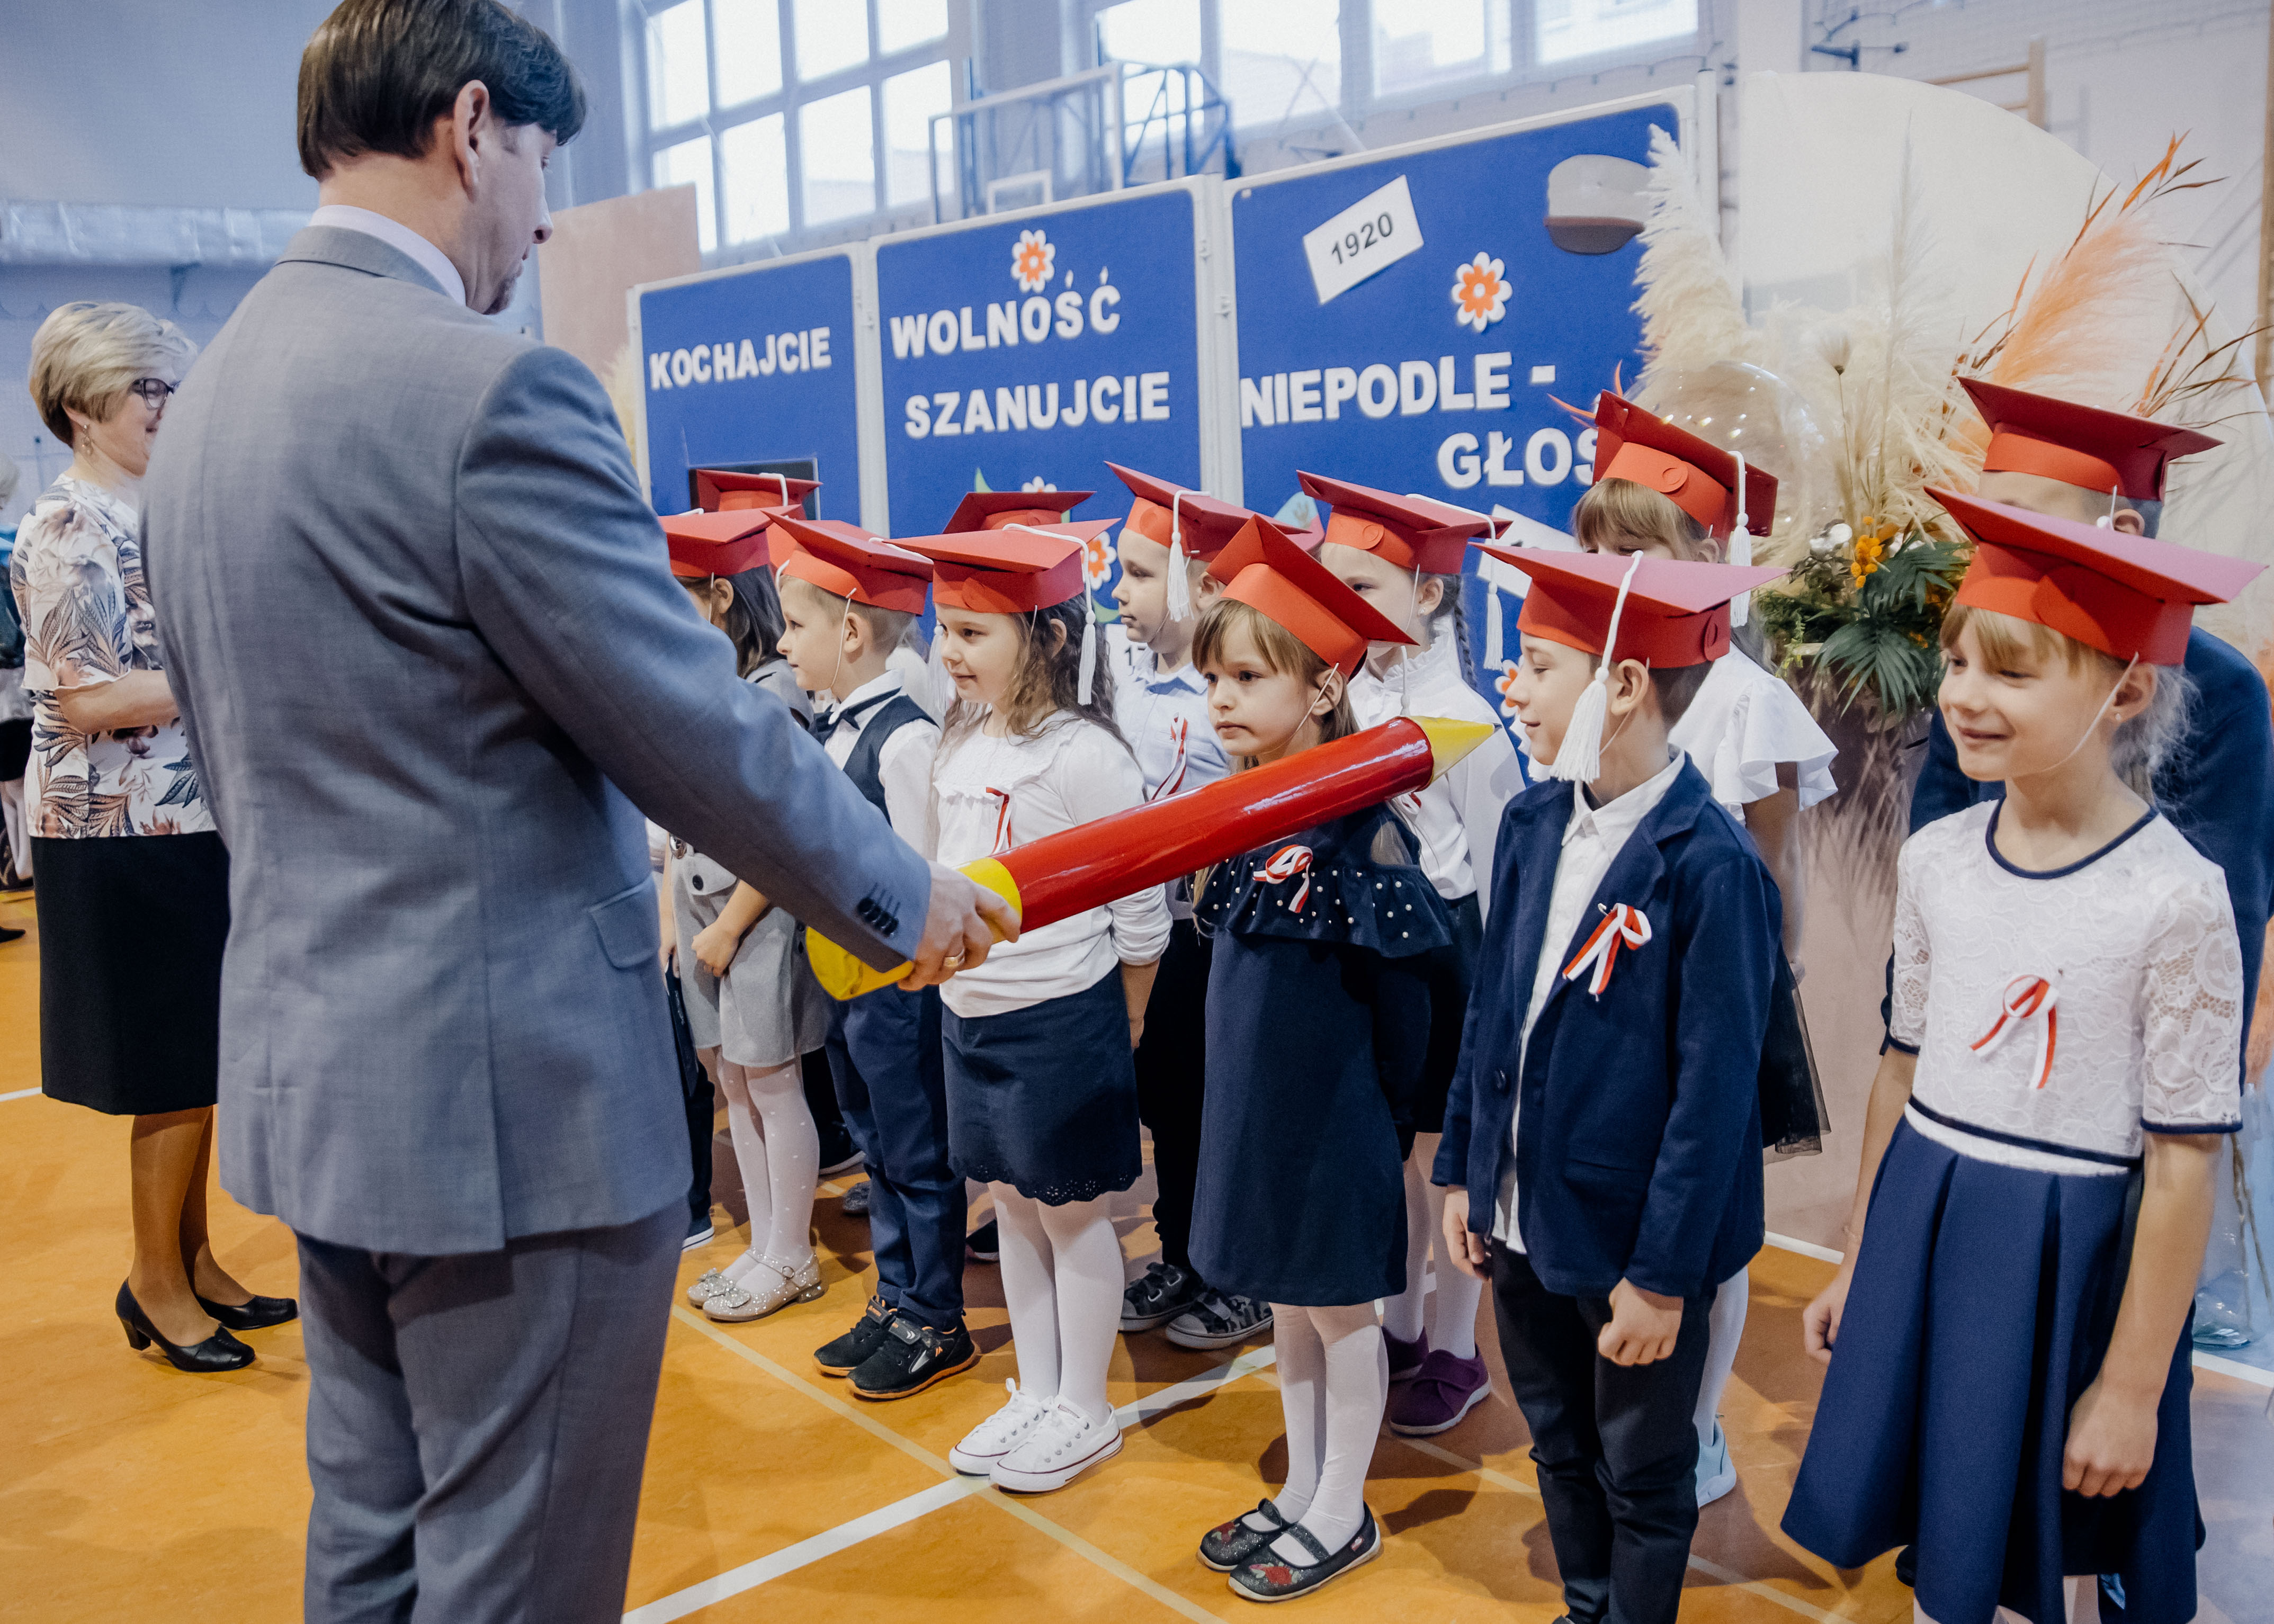 Dyrektor szkoły dr Dariusz Kubalski – pasowanie na ucznia (klasa I b wraz z wychowawczynią mgr Edytą Brożyną)